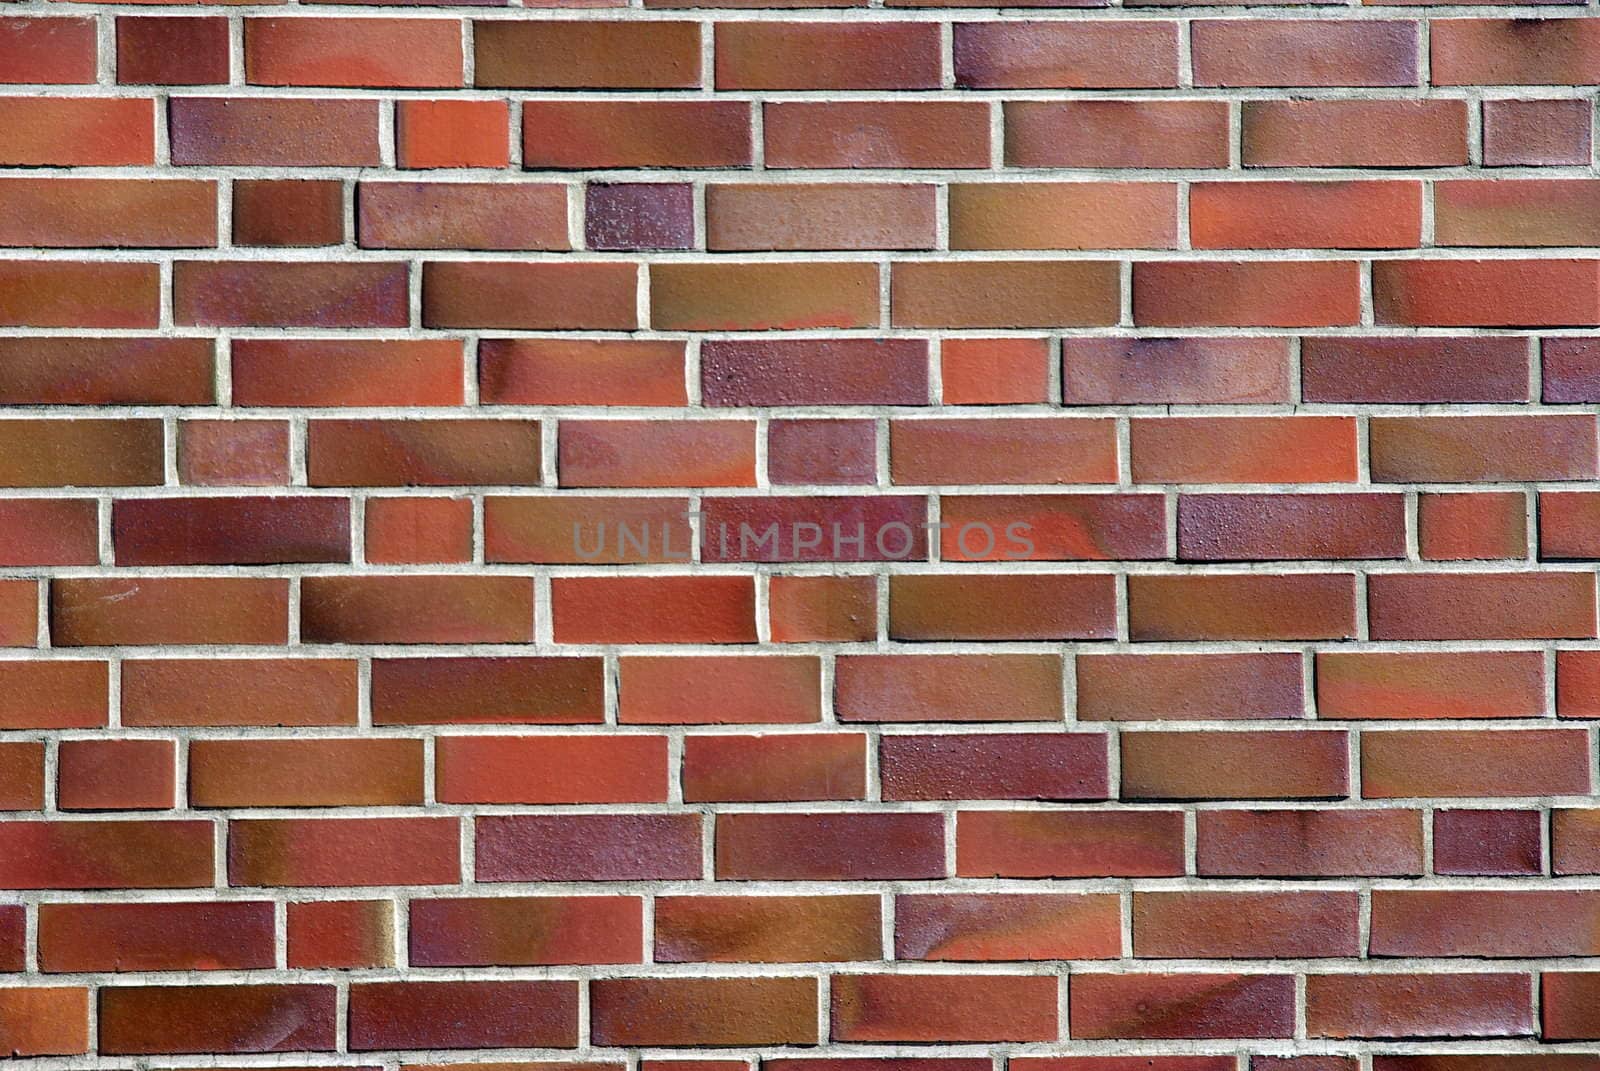 Brick Wall 1 by FotoFrank